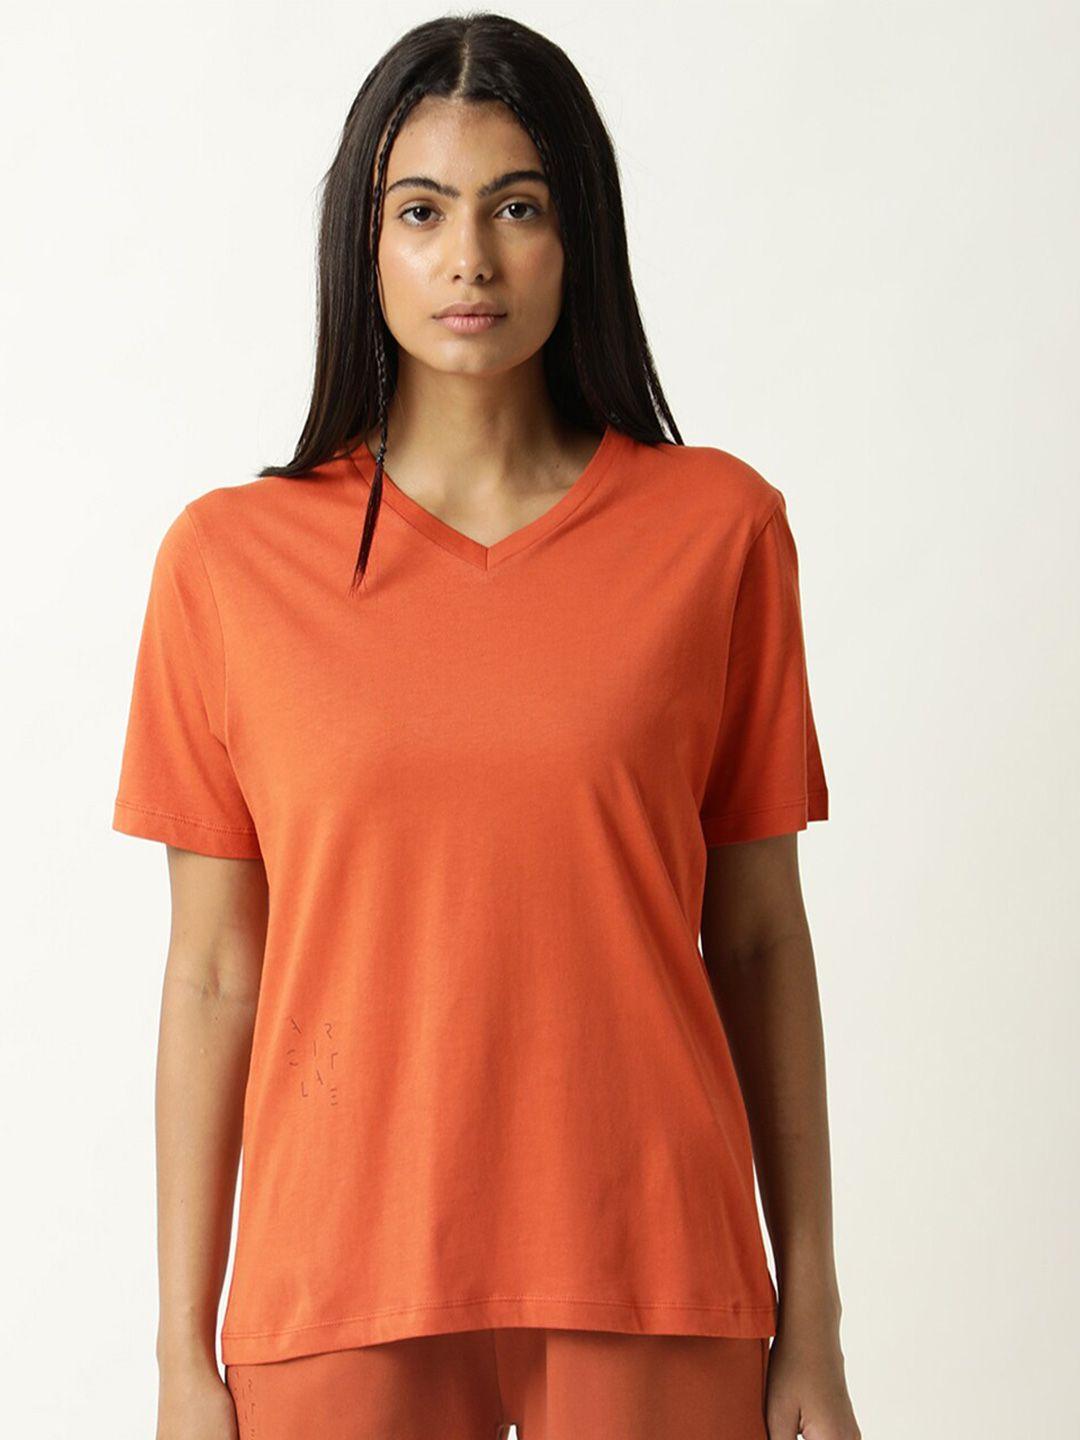 articale women orange solid v-neck slim fit cotton t-shirt